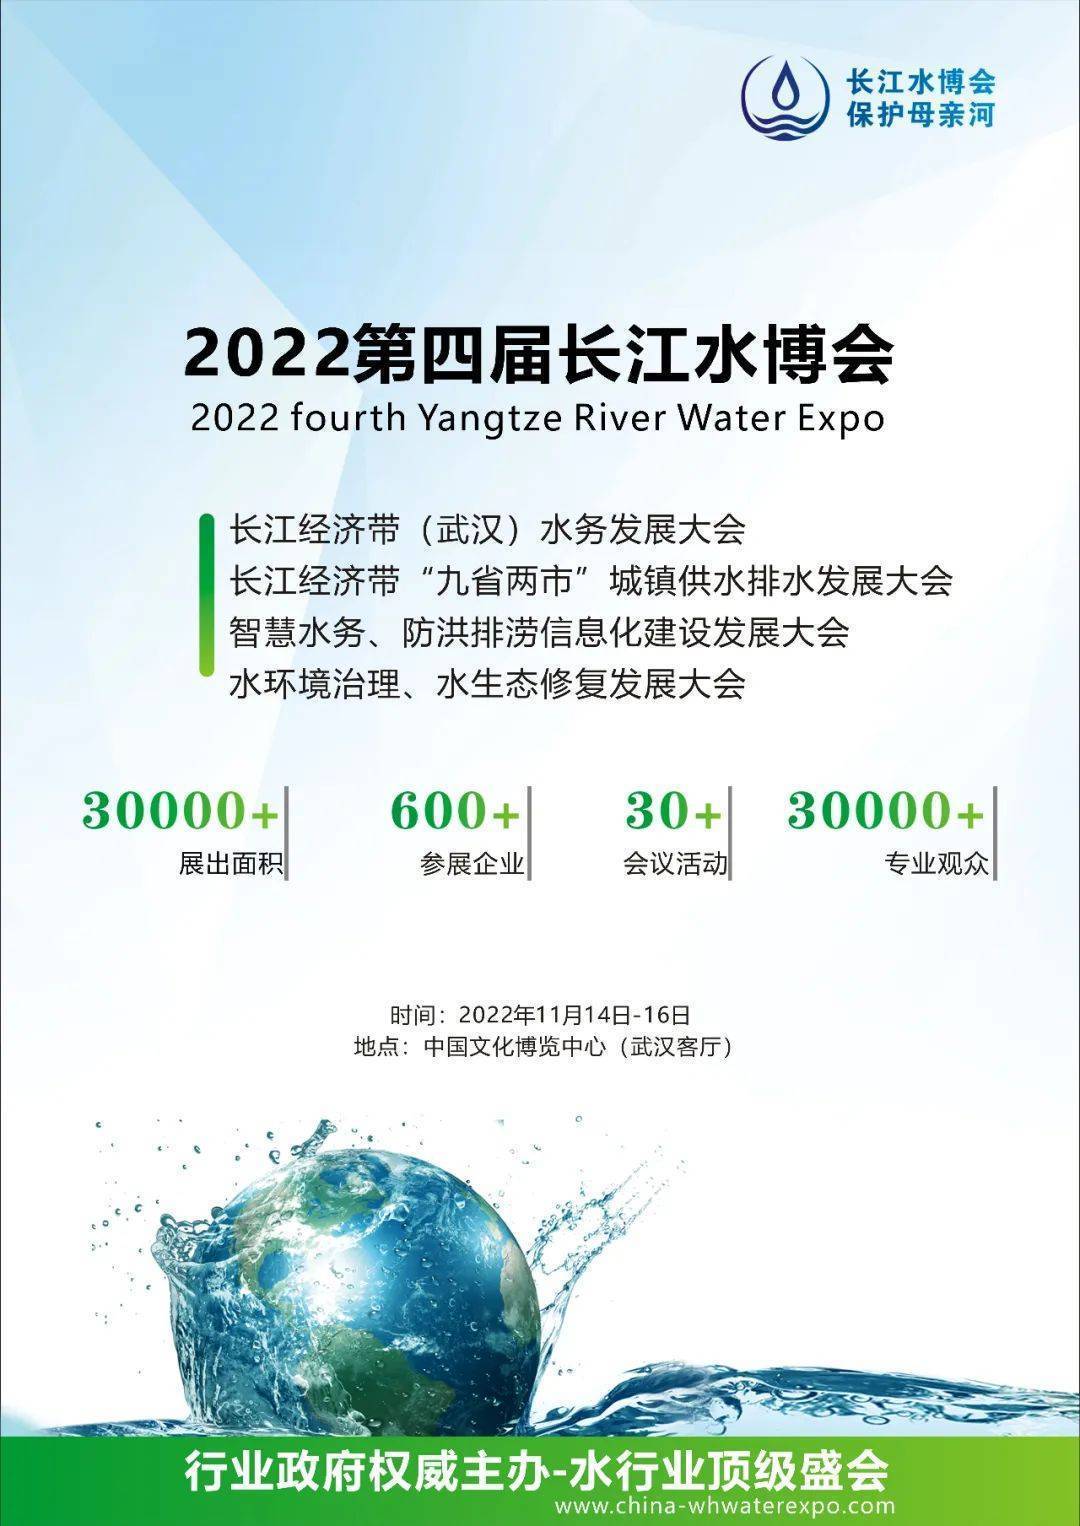 PP电子官方网站诚邀观展 新界泵业将盛大表态第4届长江水博会！(图1)